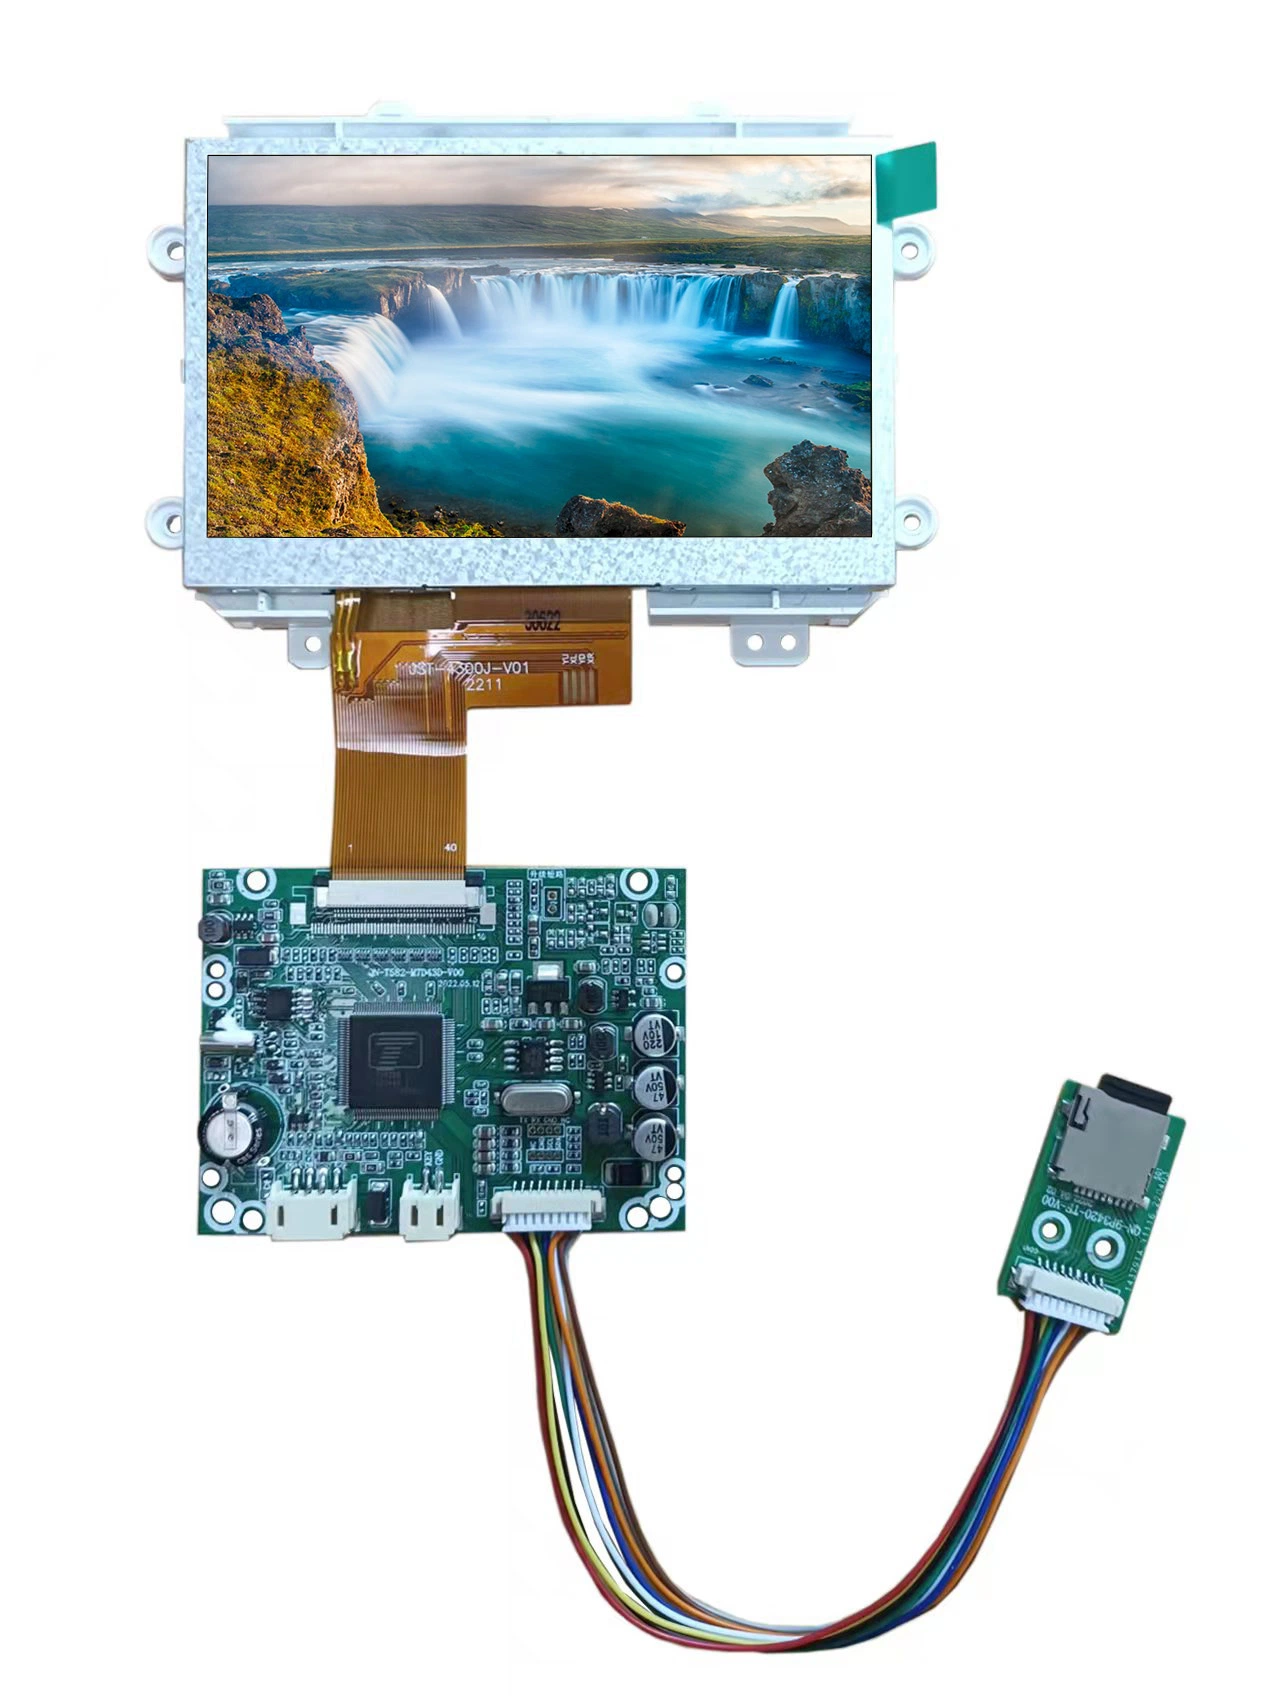 شاشة عرض TFT LCD مقاس 4.3 بوصة واجهة RGB بدقة 480X272، شاشة IPS ذات 40 سنًا، للجهاز المنزلي للسيارة Doorbell Intercom